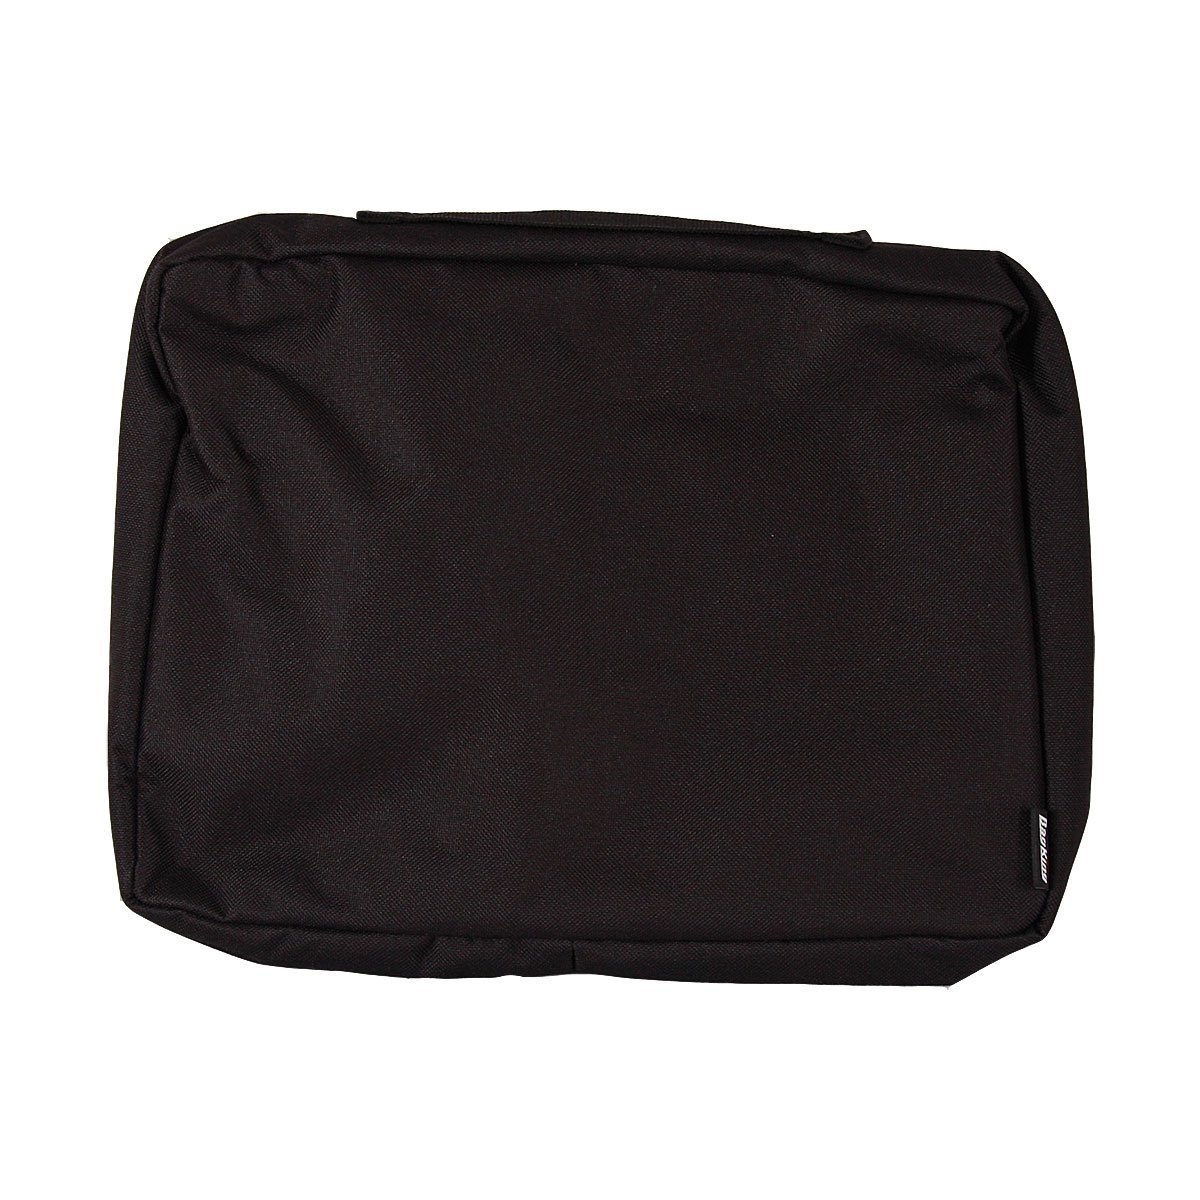 Bag King Stash Locker Deluxe Bag